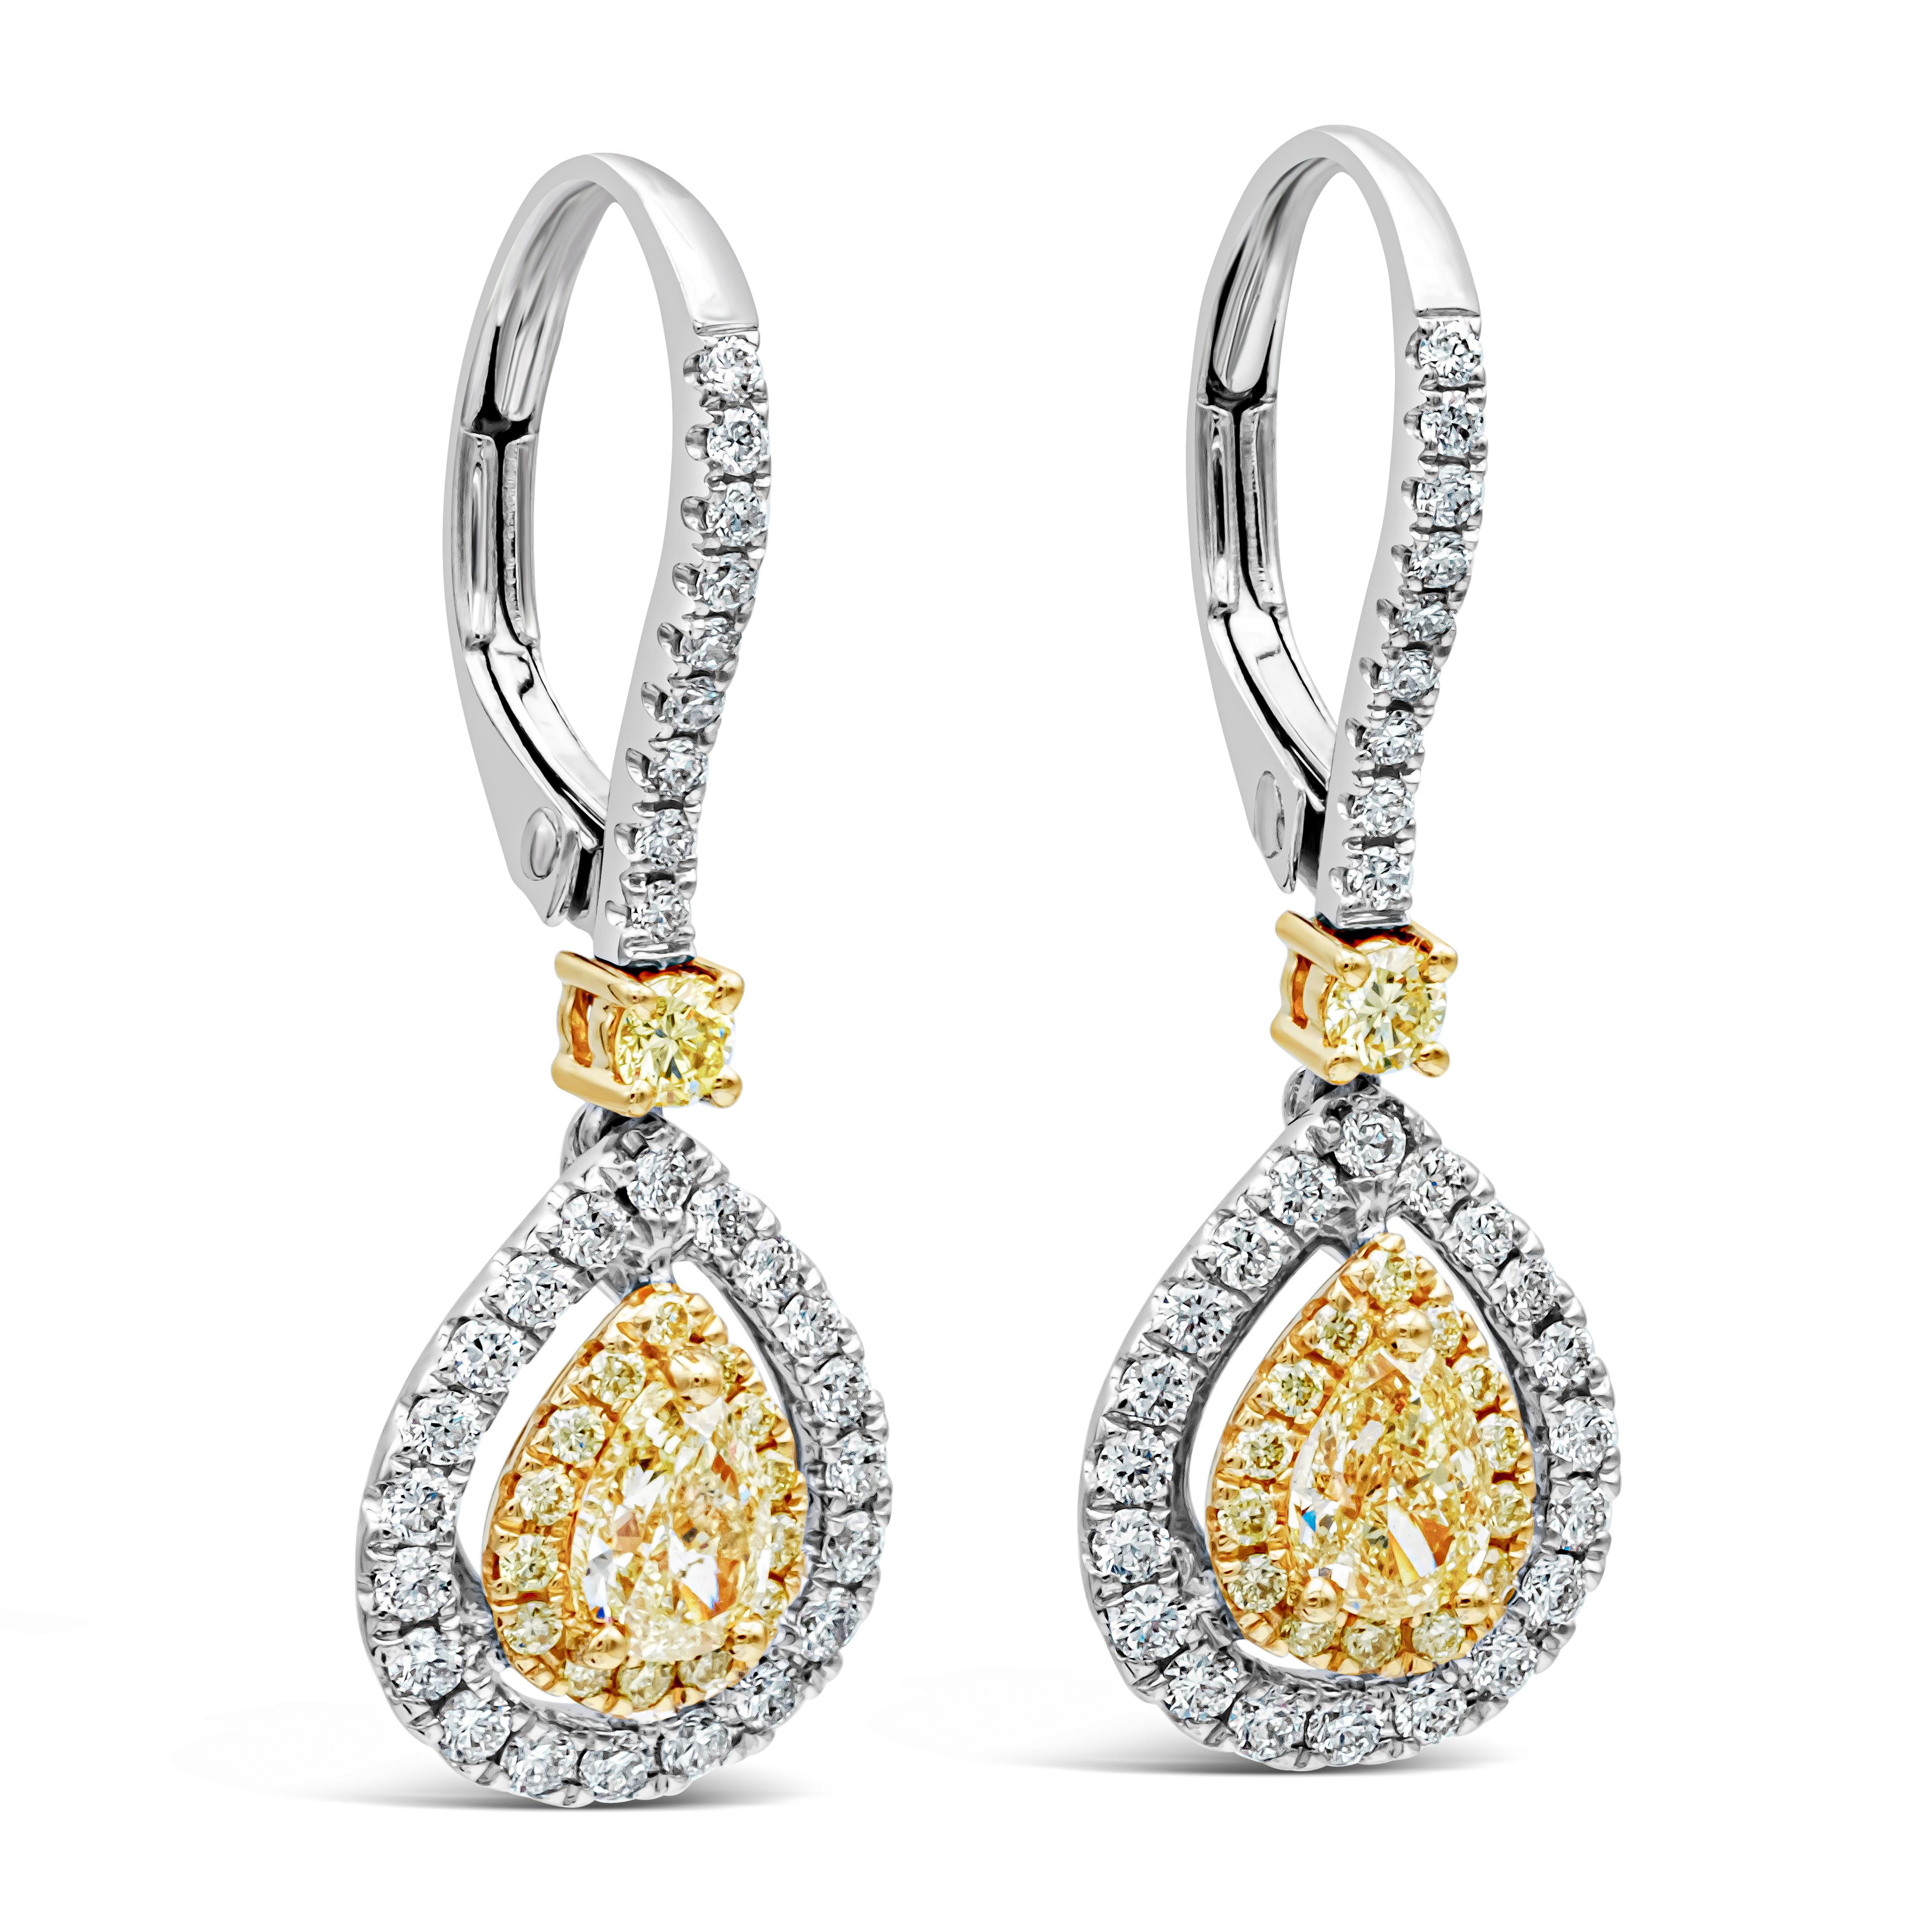 Dieses wunderschöne Paar Ohrringe besteht aus einem birnenförmigen gelben Diamanten, der von einem runden gelben Diamanten umgeben ist, mit einem äußeren Halo aus runden weißen Diamanten. Hängt an einem diamantbesetzten Hebel mit einem einzelnen